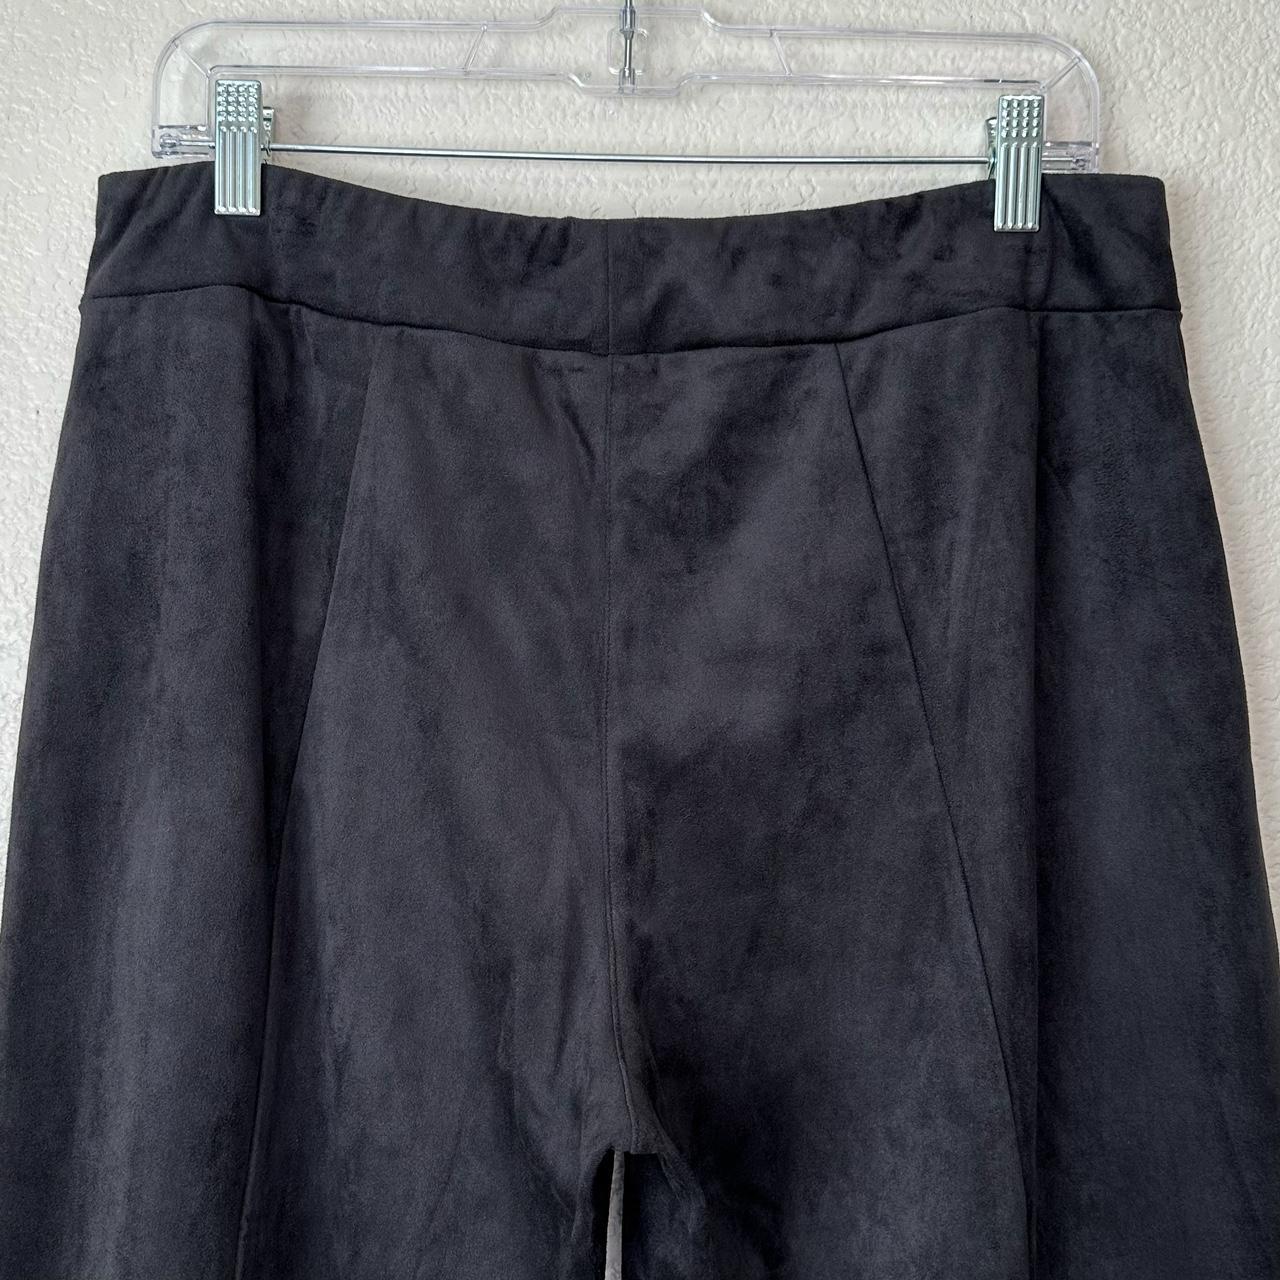 Soft Surroundings black velvet pull on women's pants - Depop